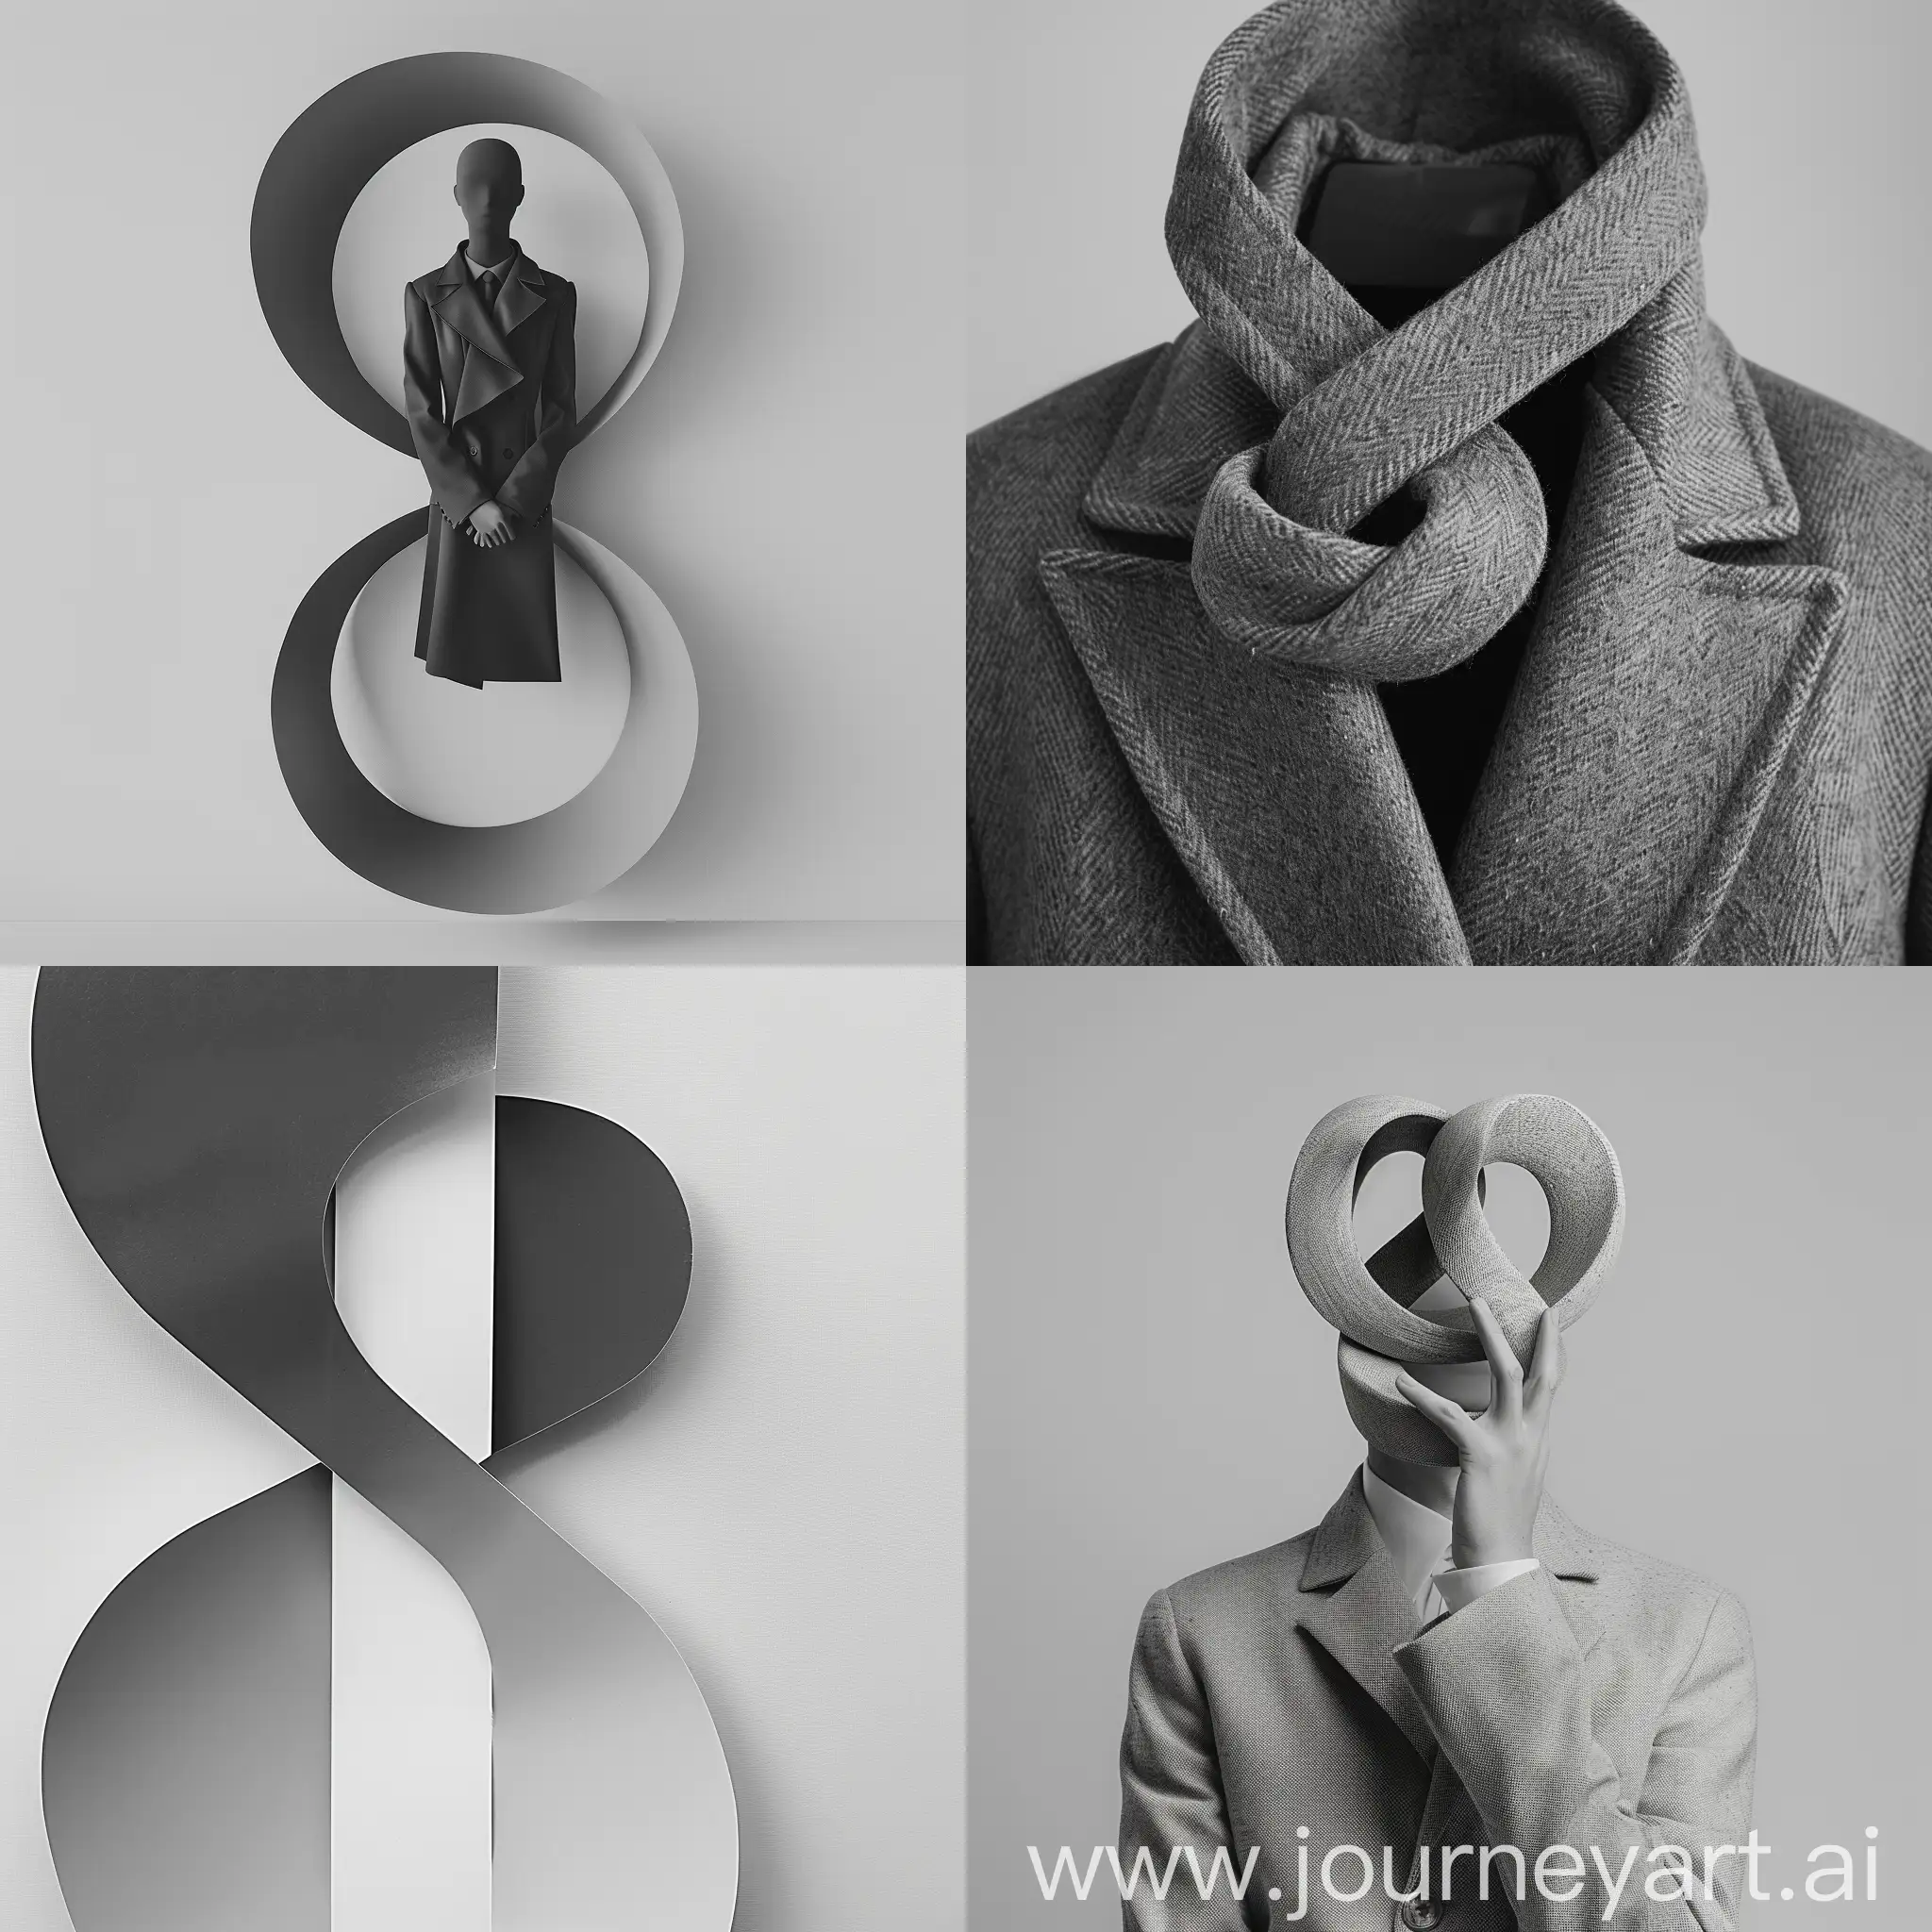 figure 8 of colors, stylish magazine black and white photo, light gray uniform background